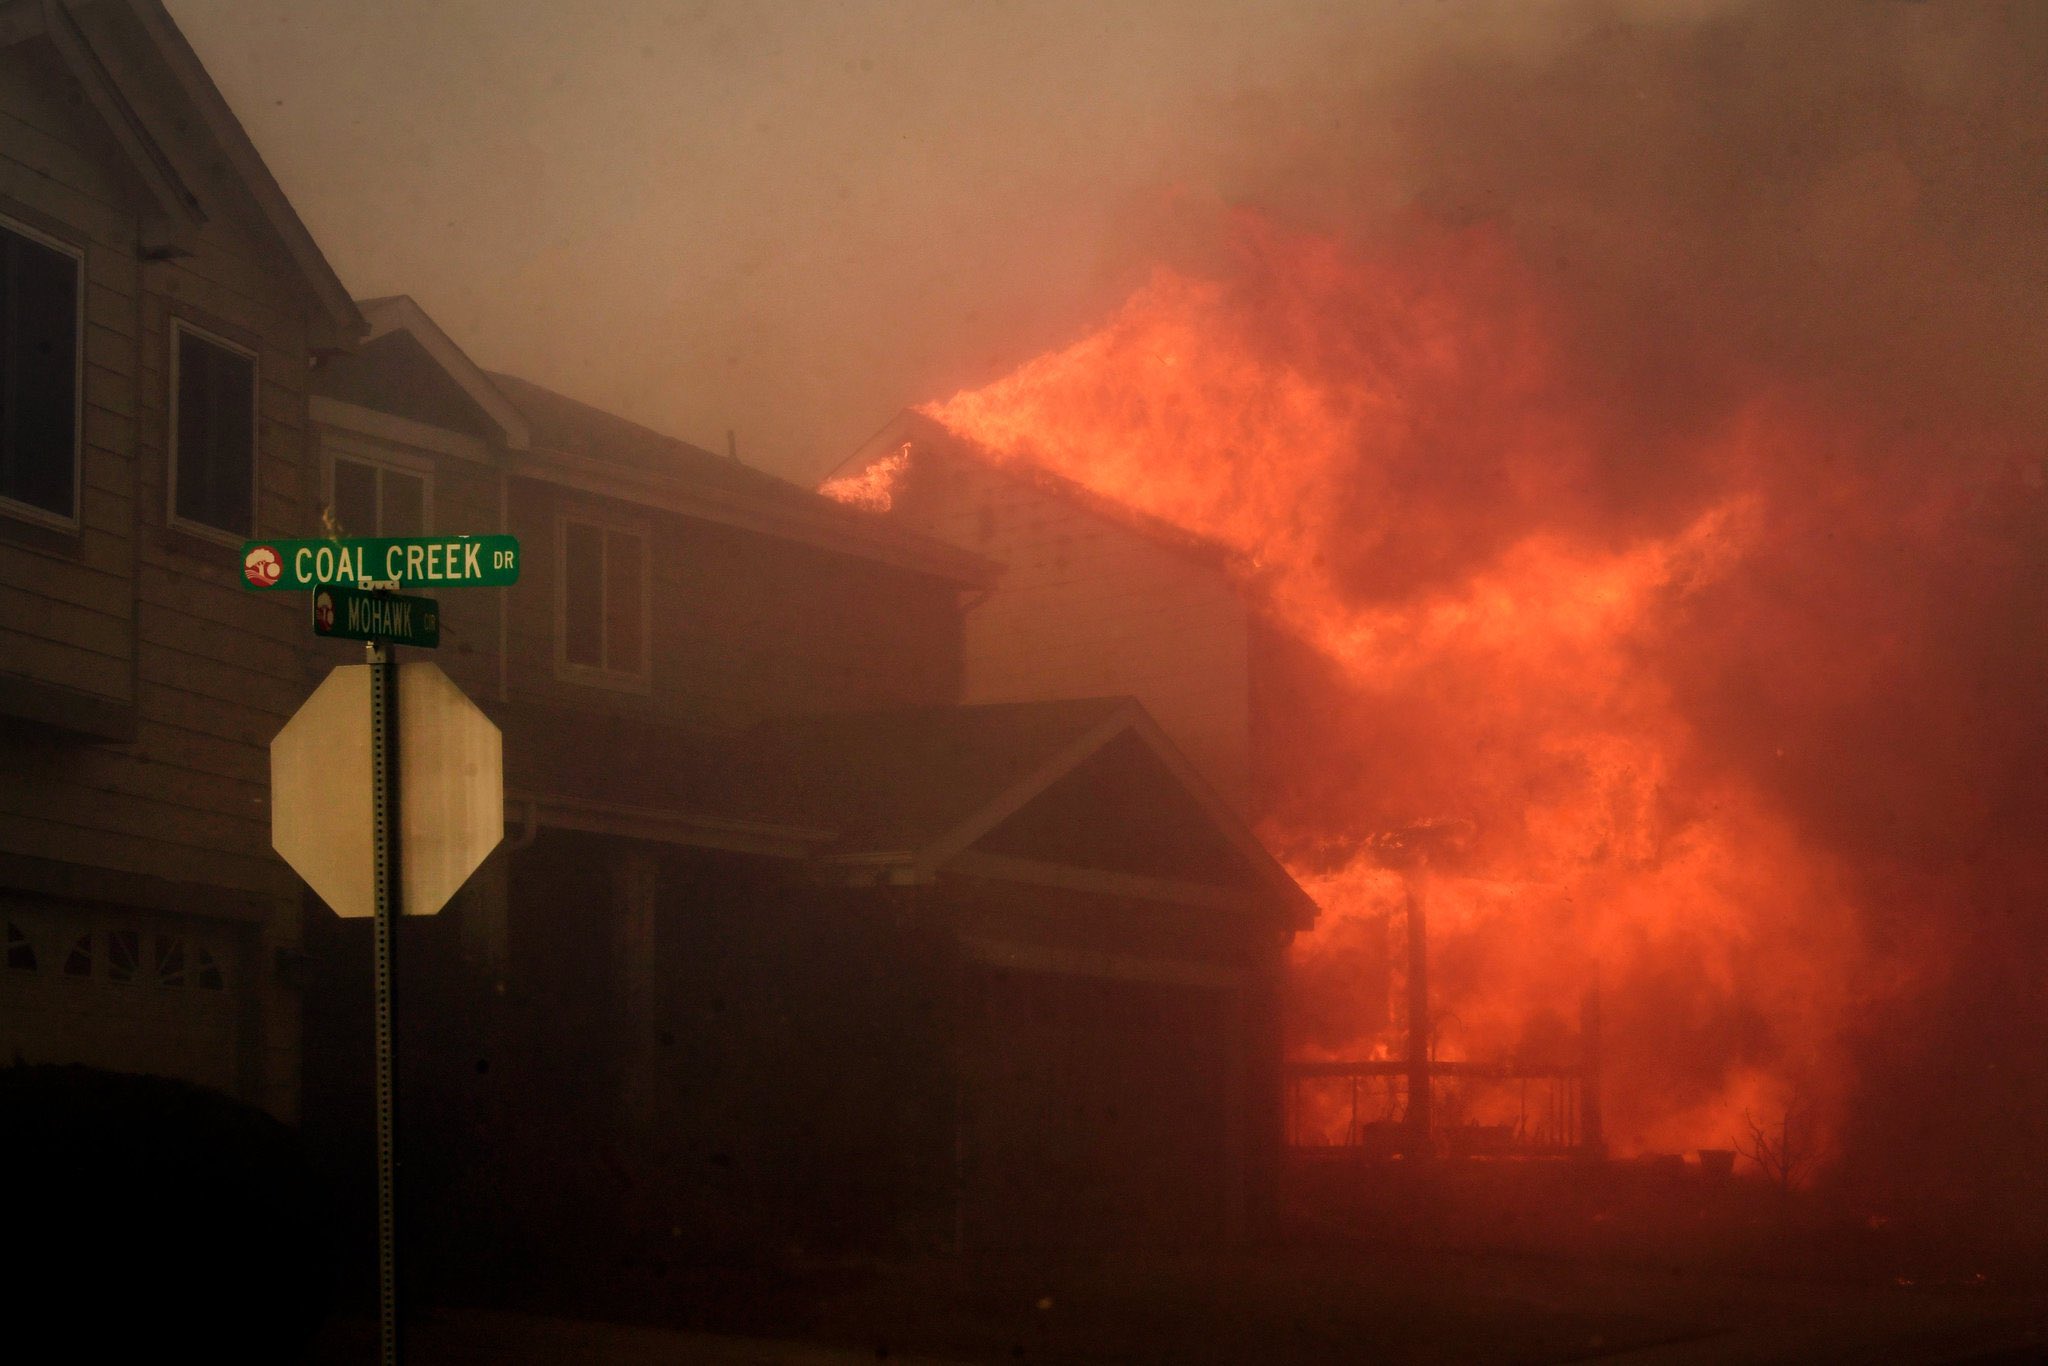 Declaran estado de emergencia a Colorado por incendio